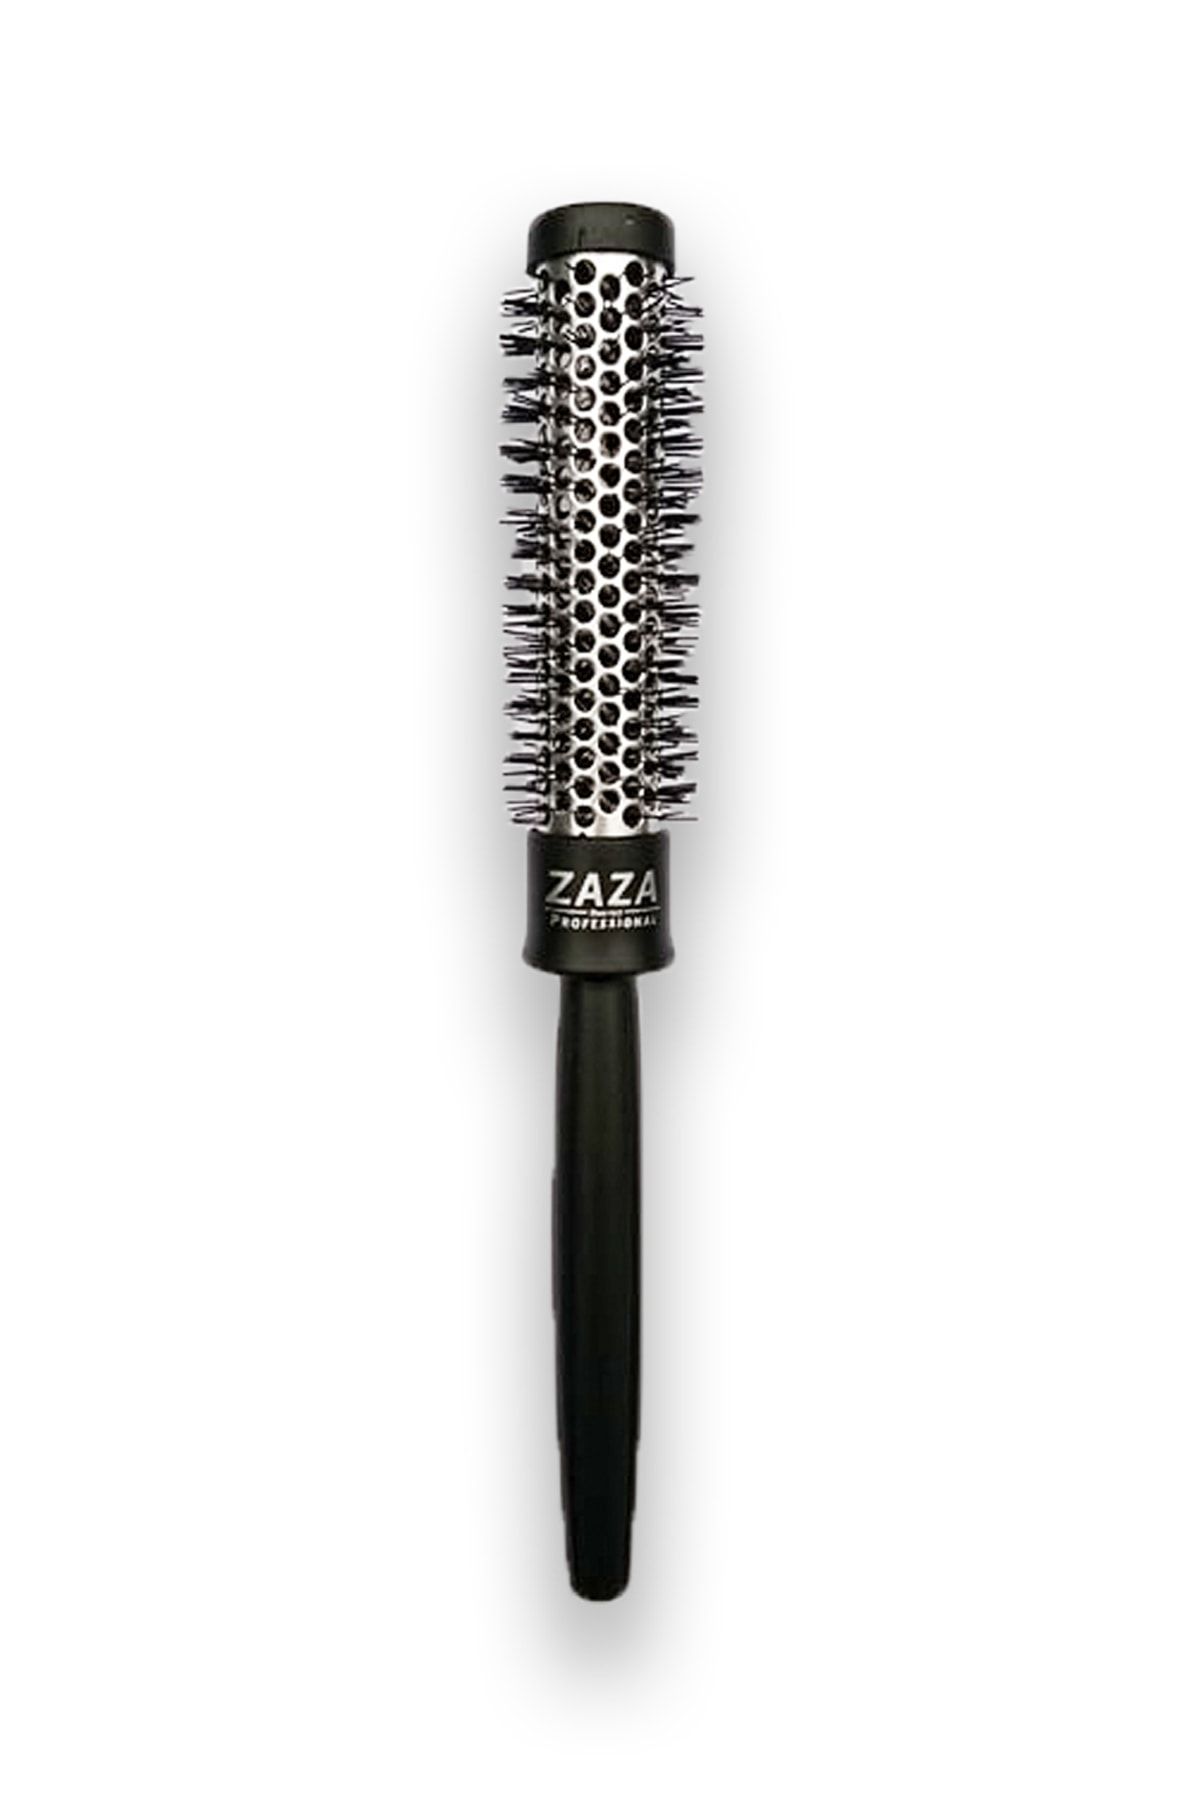 Zaza Termix Saç Fırçası 23 Diyametre - Fön Fırçası